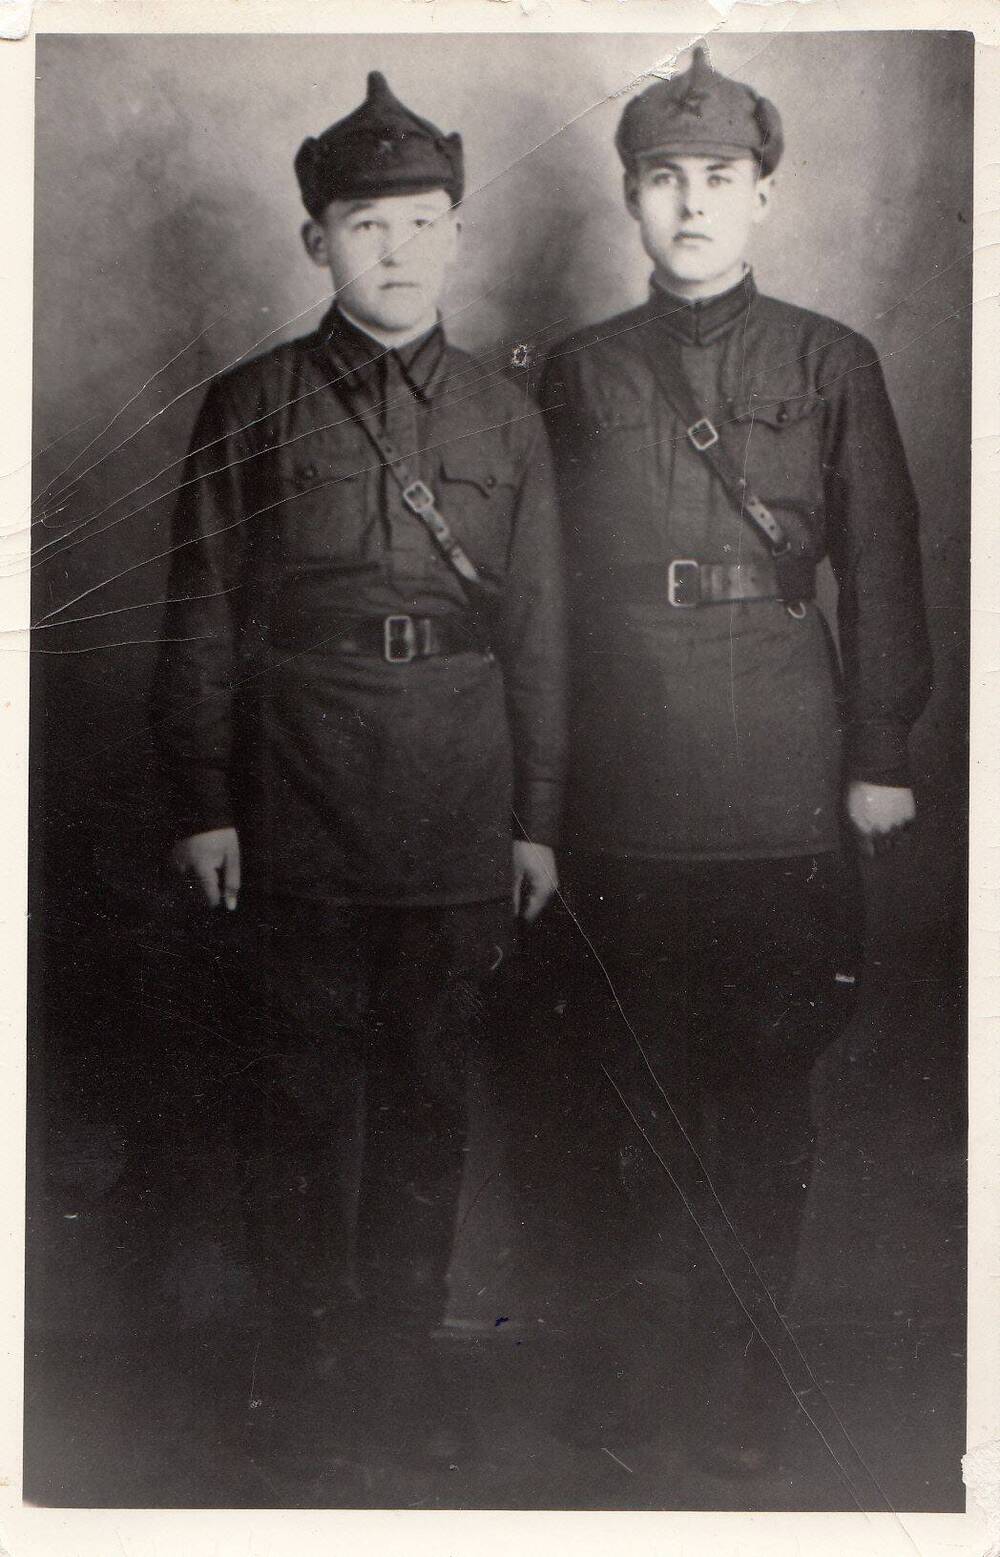 Фотография: курсант Подольского пехотного училища Хутченко Михаил Филиппович (справа)